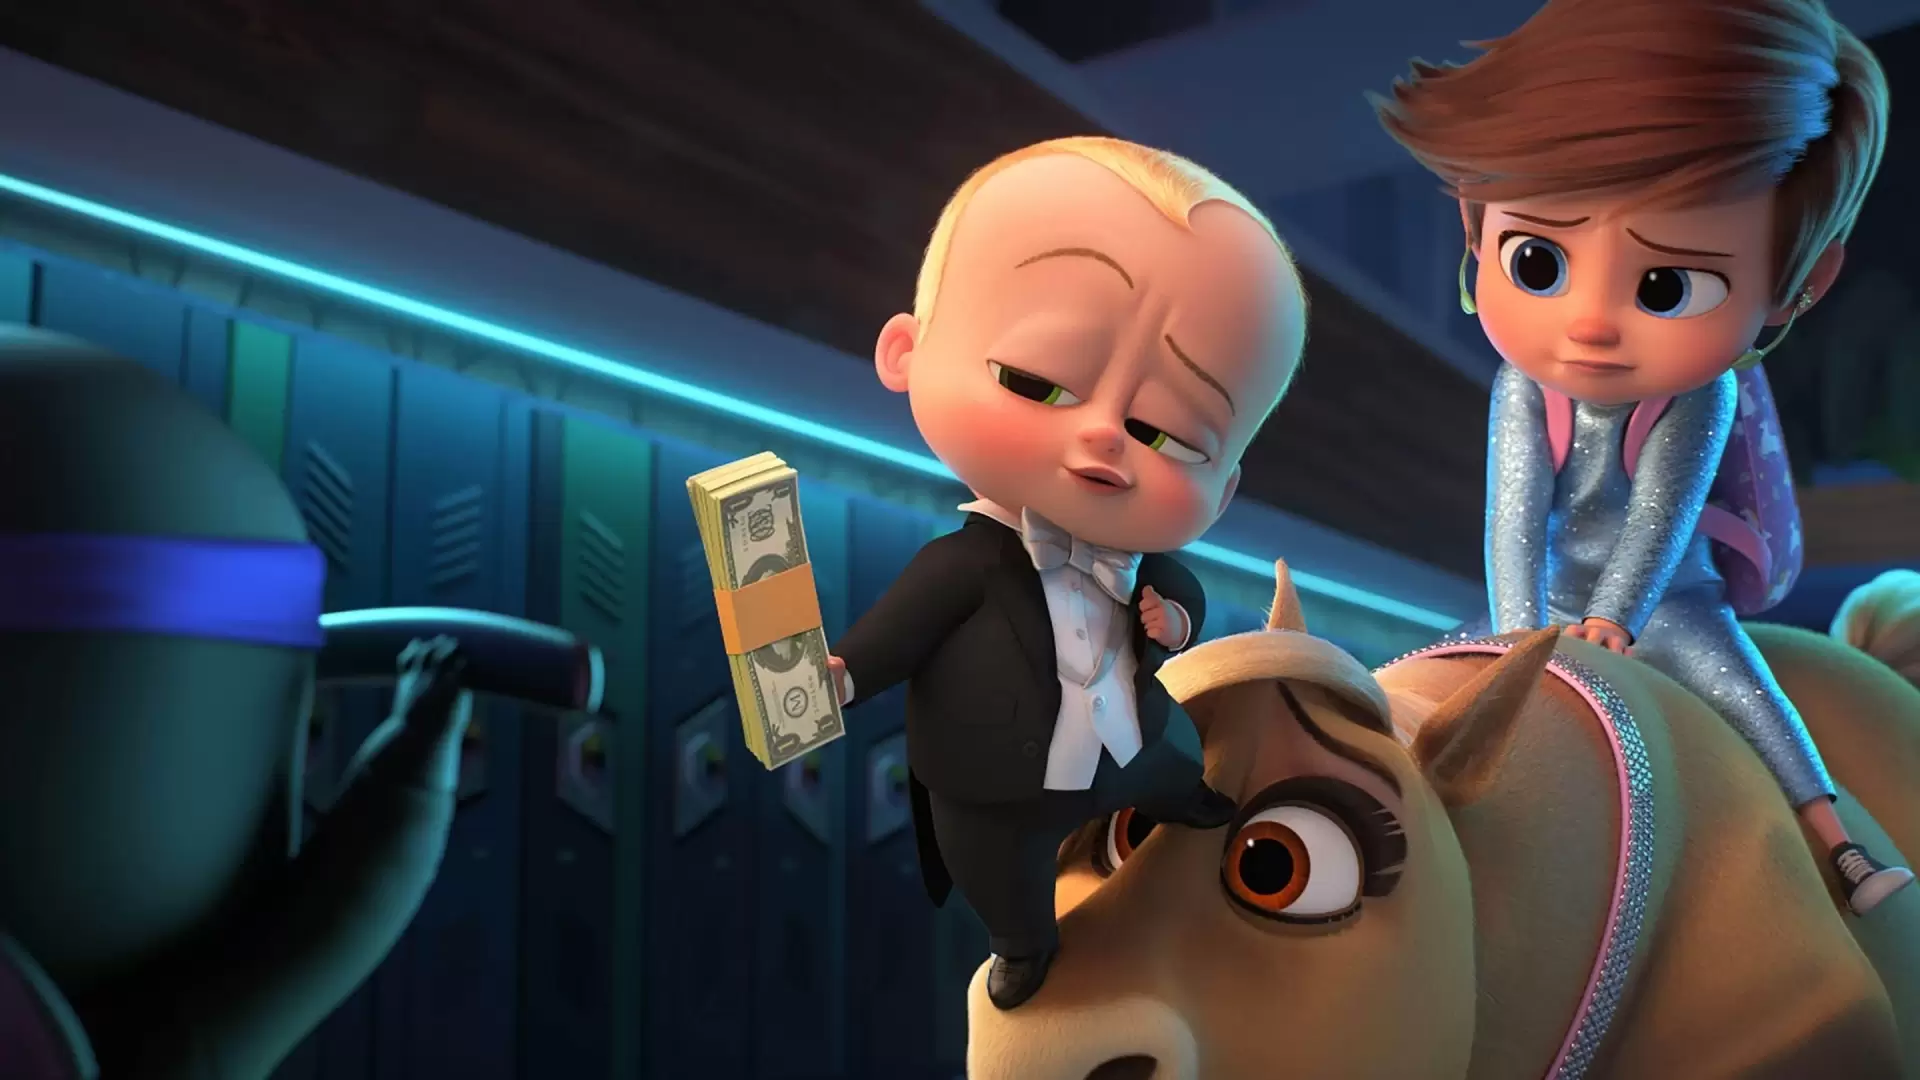 دانلود انیمیشن The Boss Baby: Family Business 2021 (بچه رئیس : تجارت خانوادگی) با زیرنویس فارسی و تماشای آنلاین